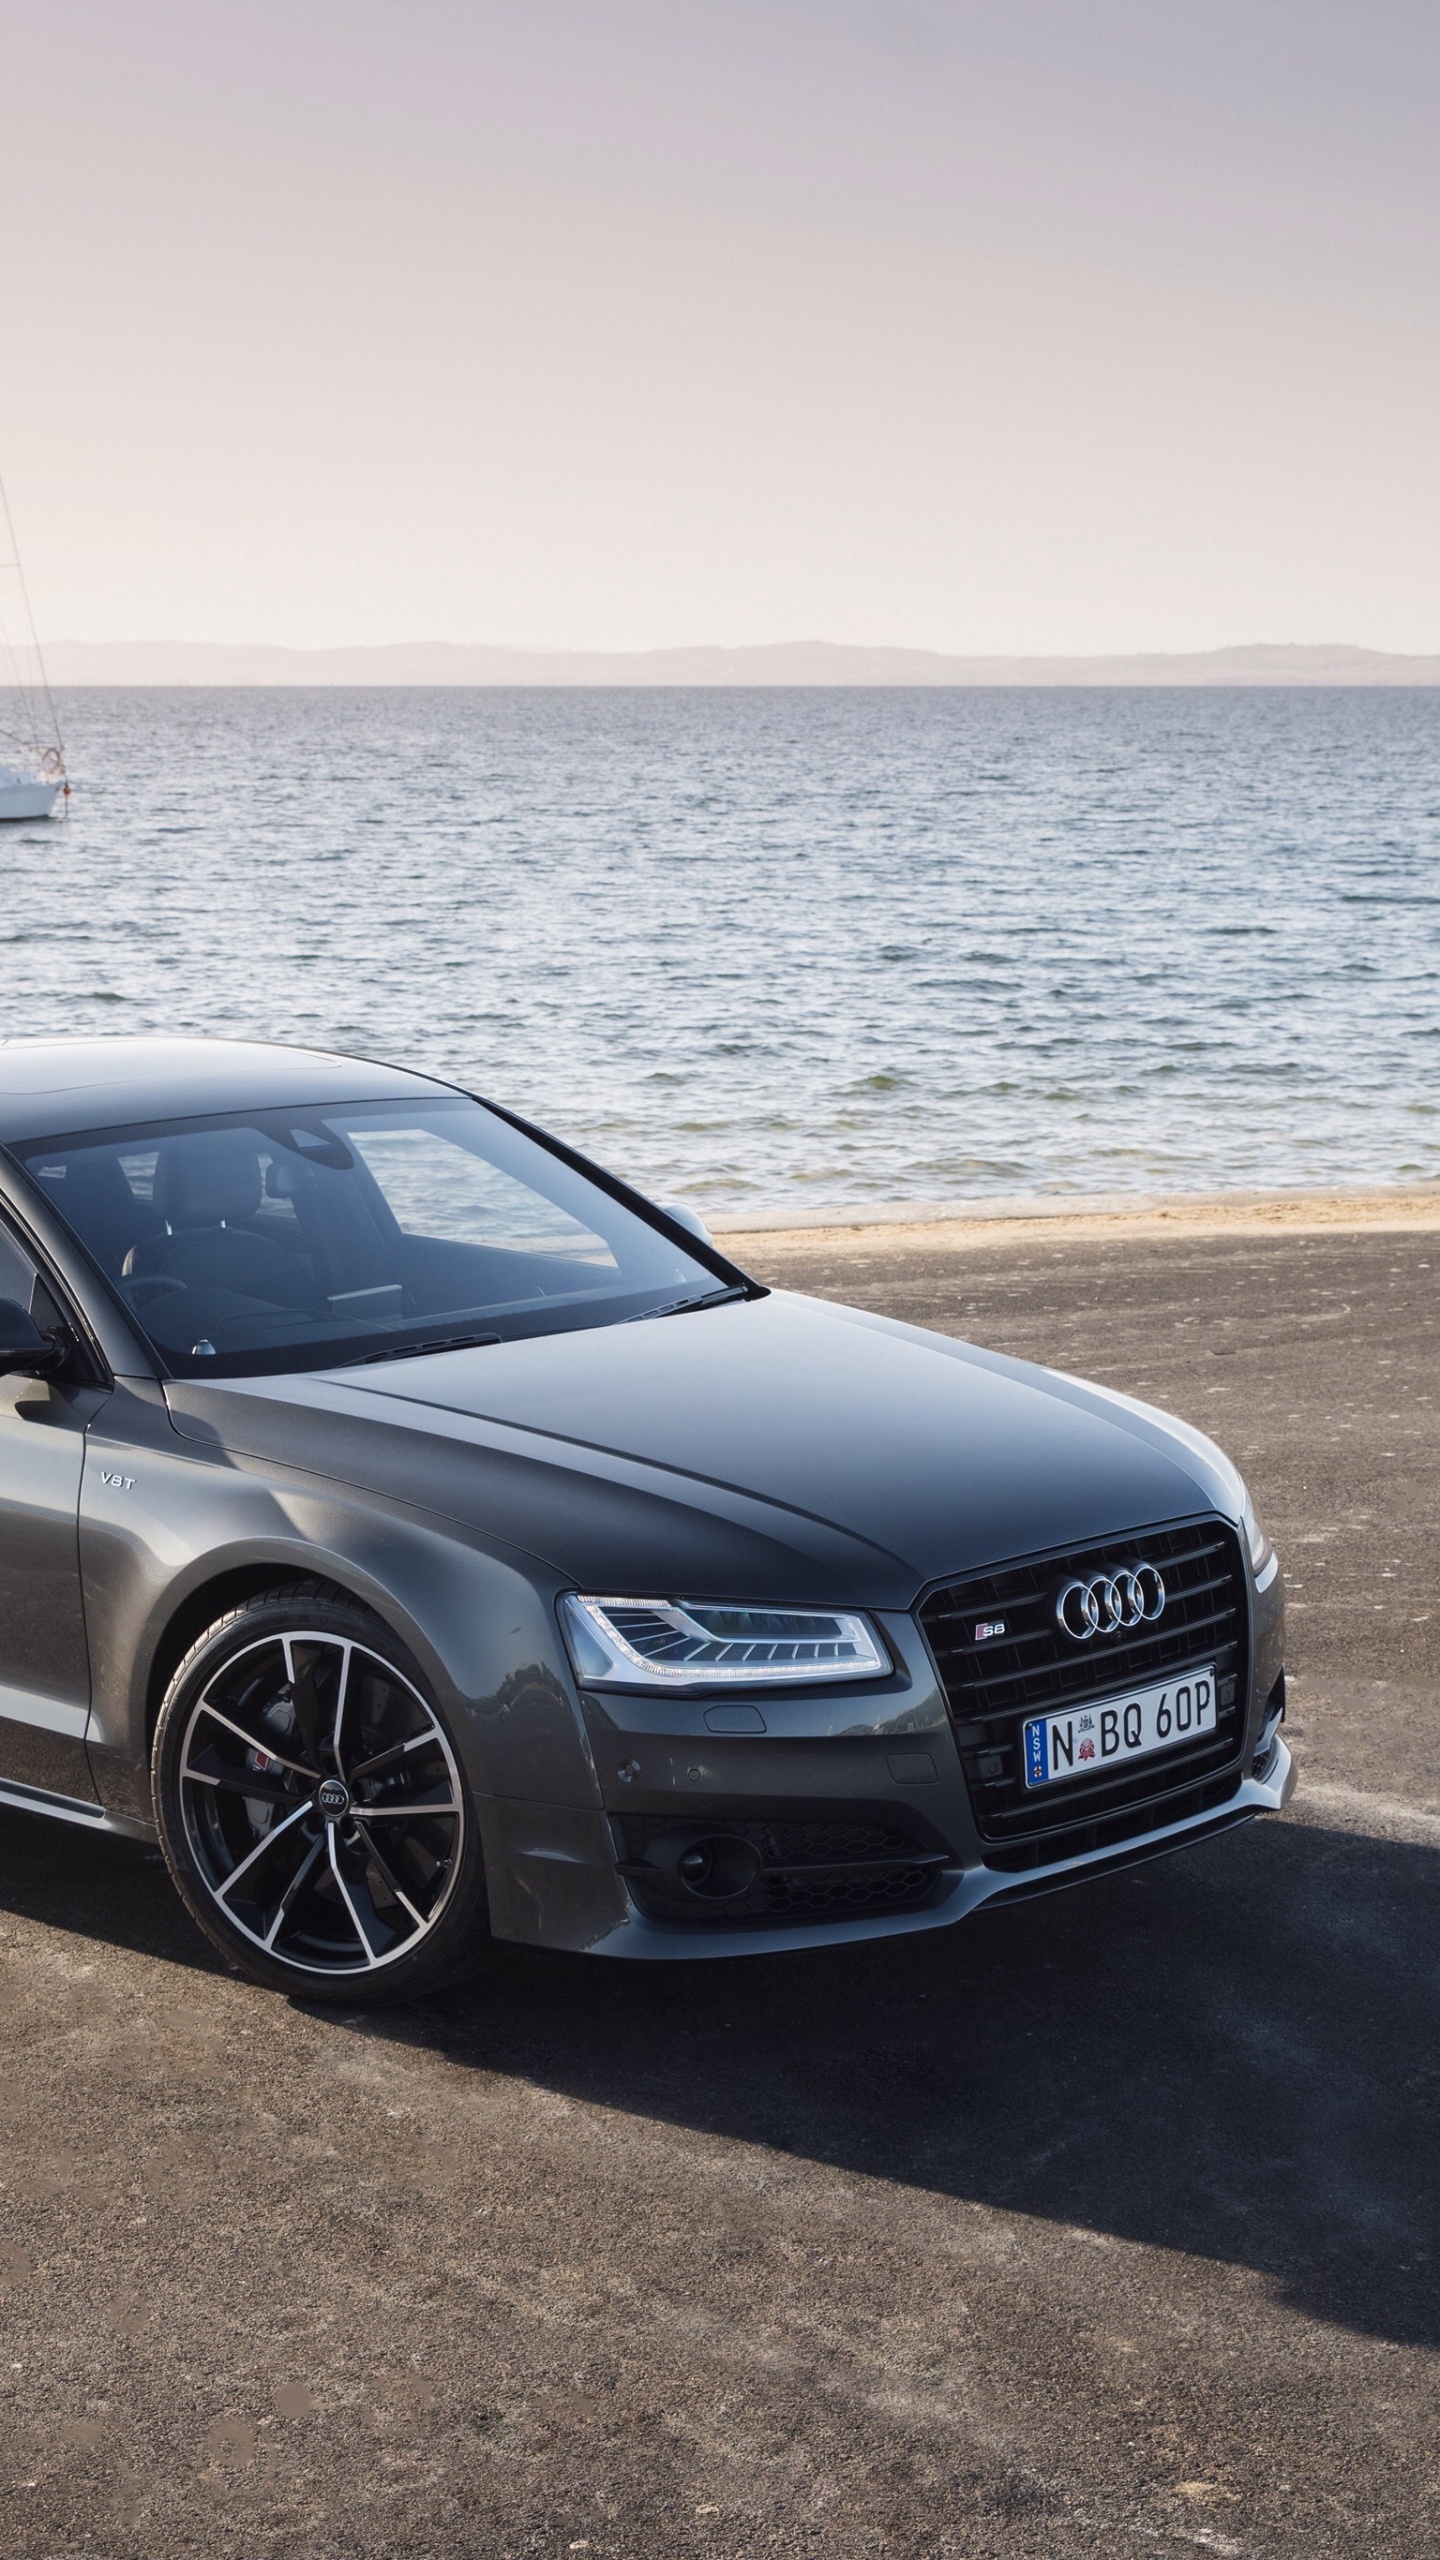 Audi Noir a 4 Sur la Plage Pendant la Journée. Wallpaper in 1440x2560 Resolution